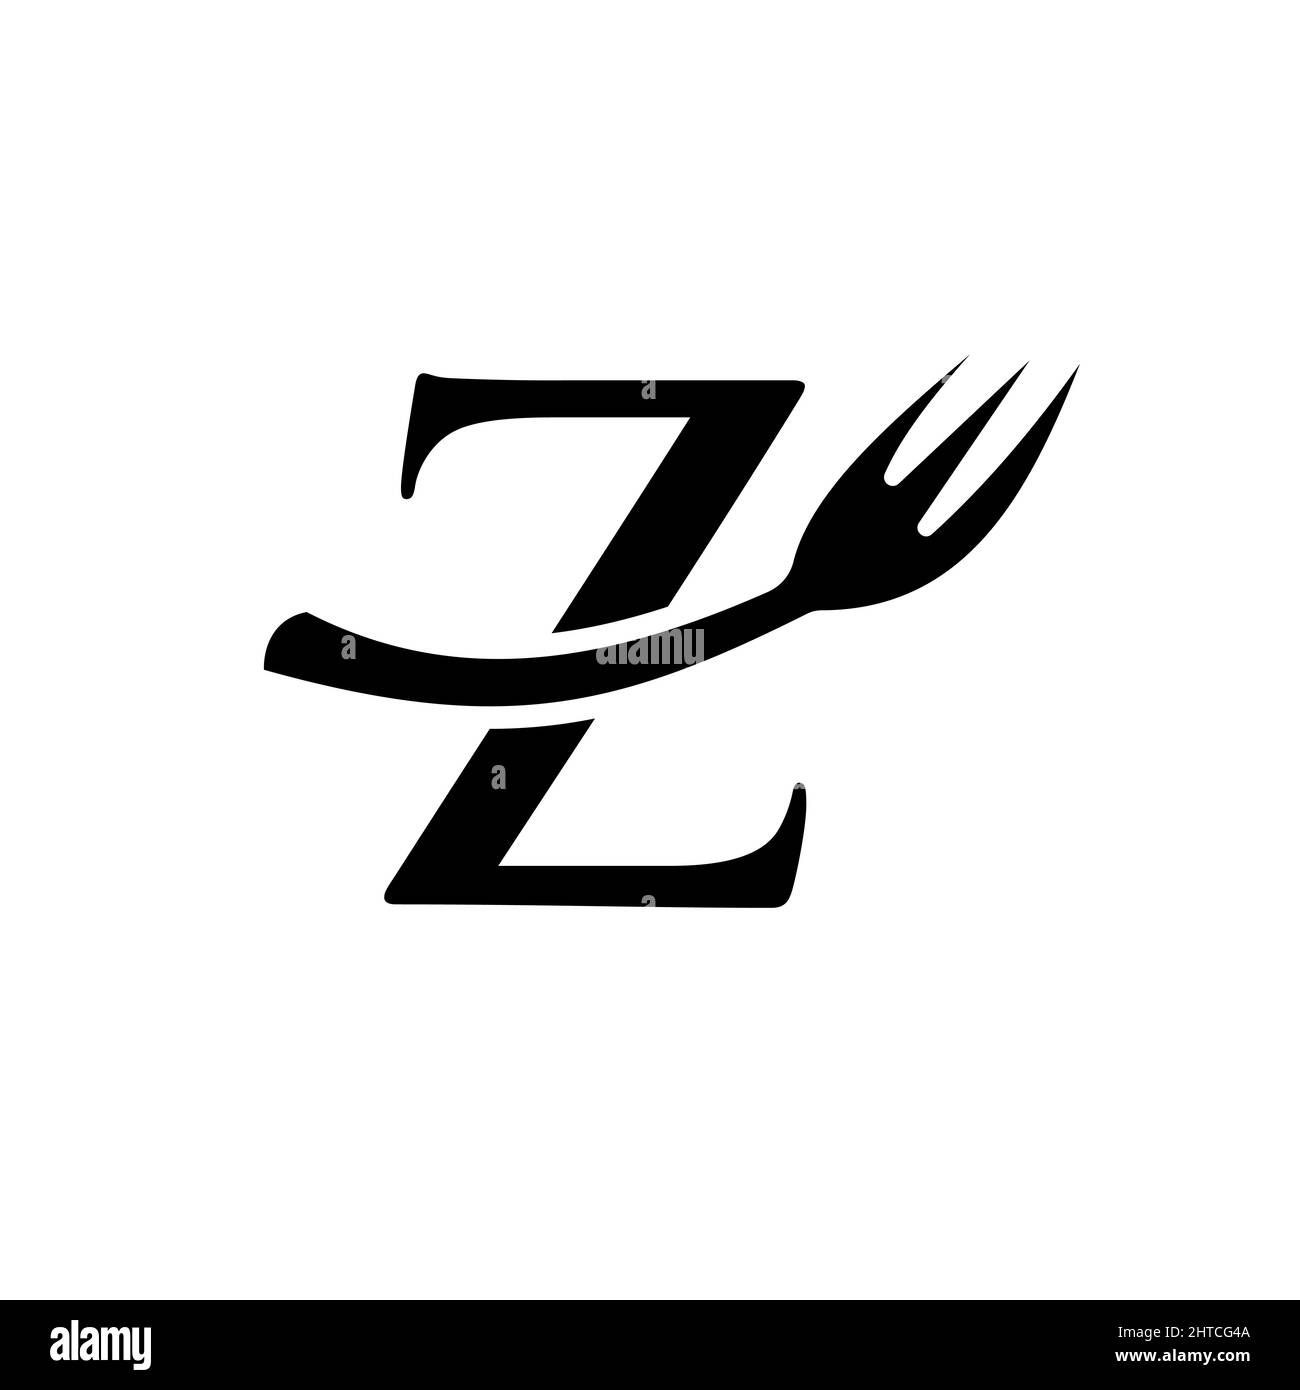 Restaurant Logo Template On Letter Z. Letter Z Restaurant Logo Sign Design Stock Vector